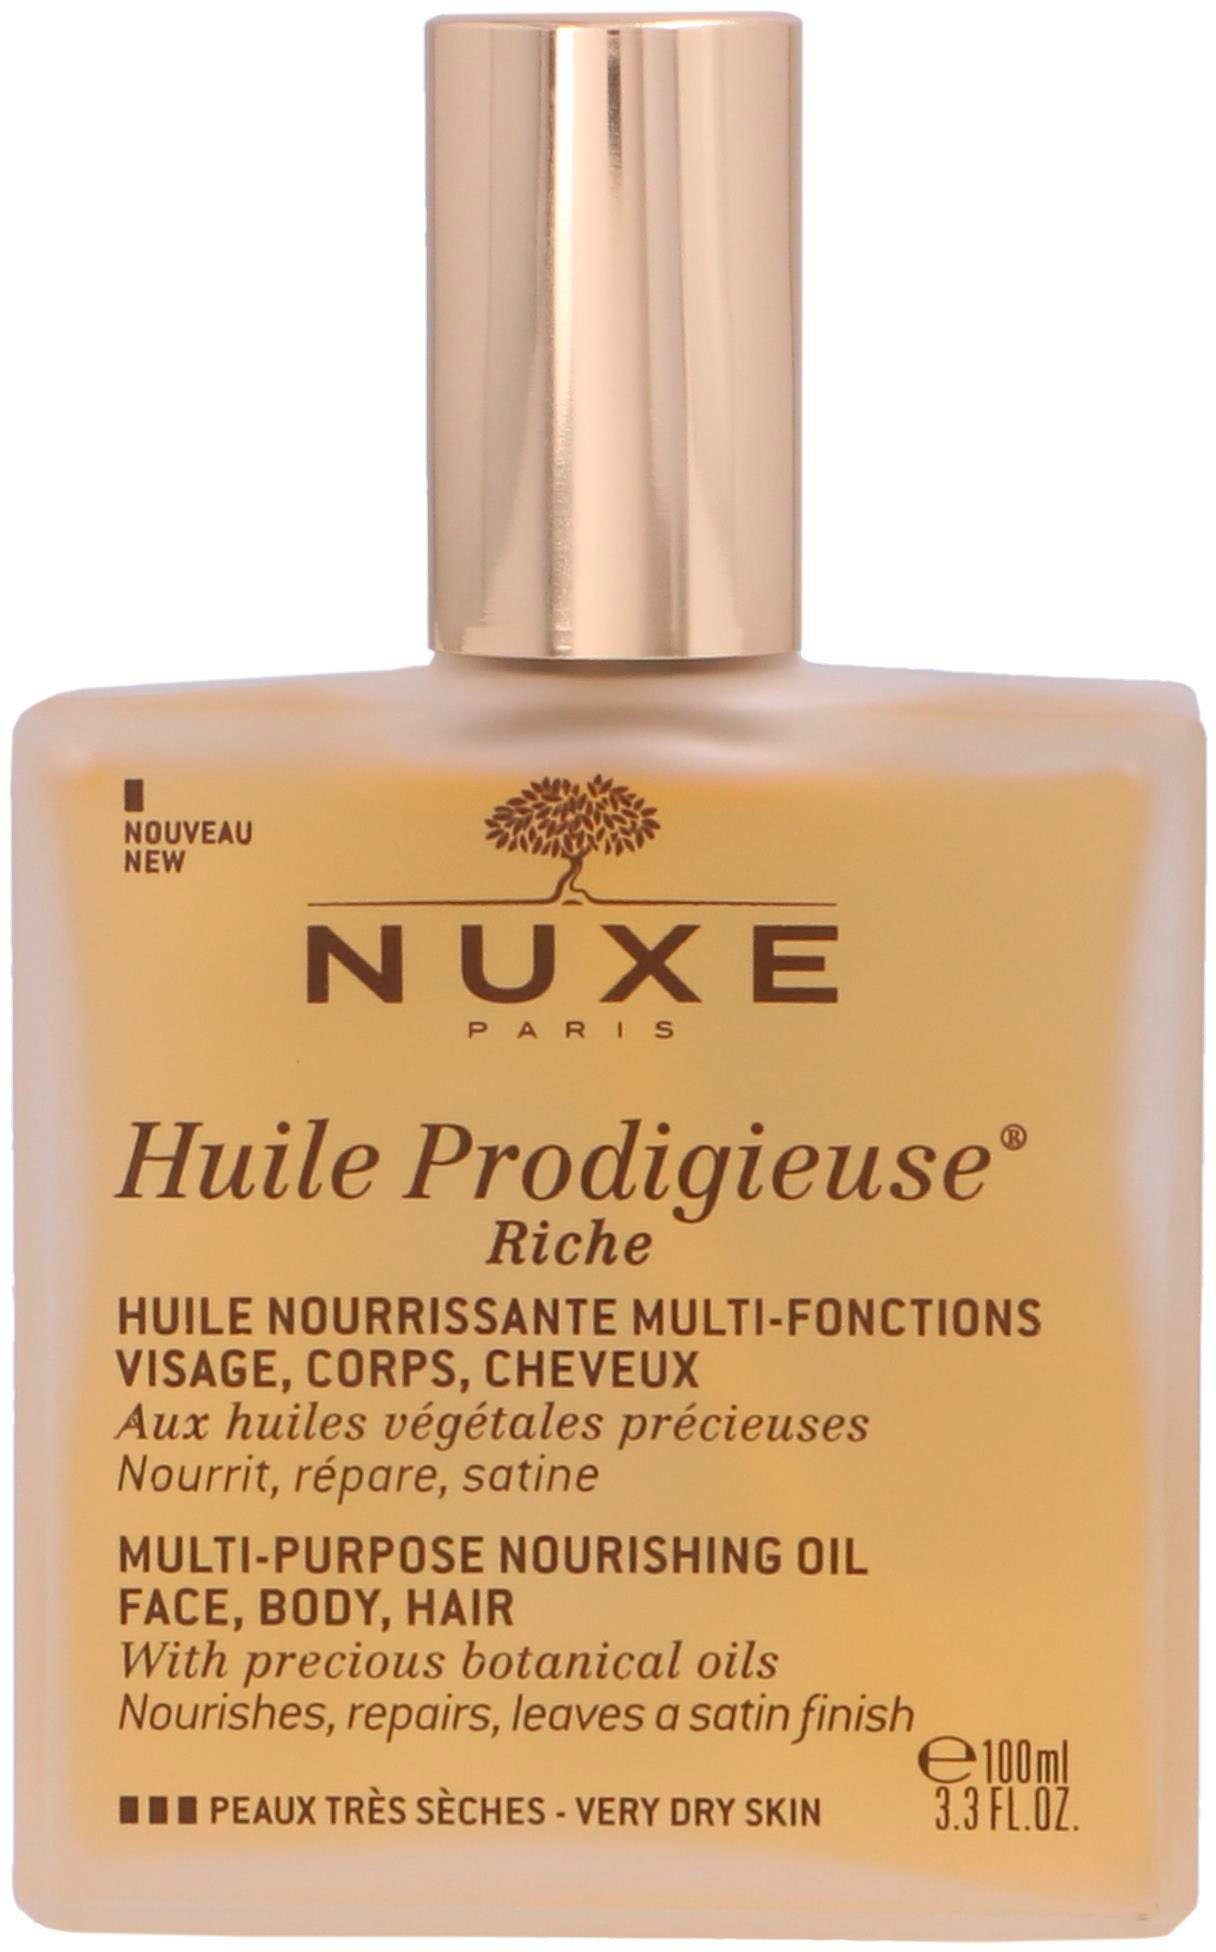 Nuxe Paris Körperöl Nuxe Huile Prodigieuse Riche Oil Face, Body,Hair 100ml | Körperöle